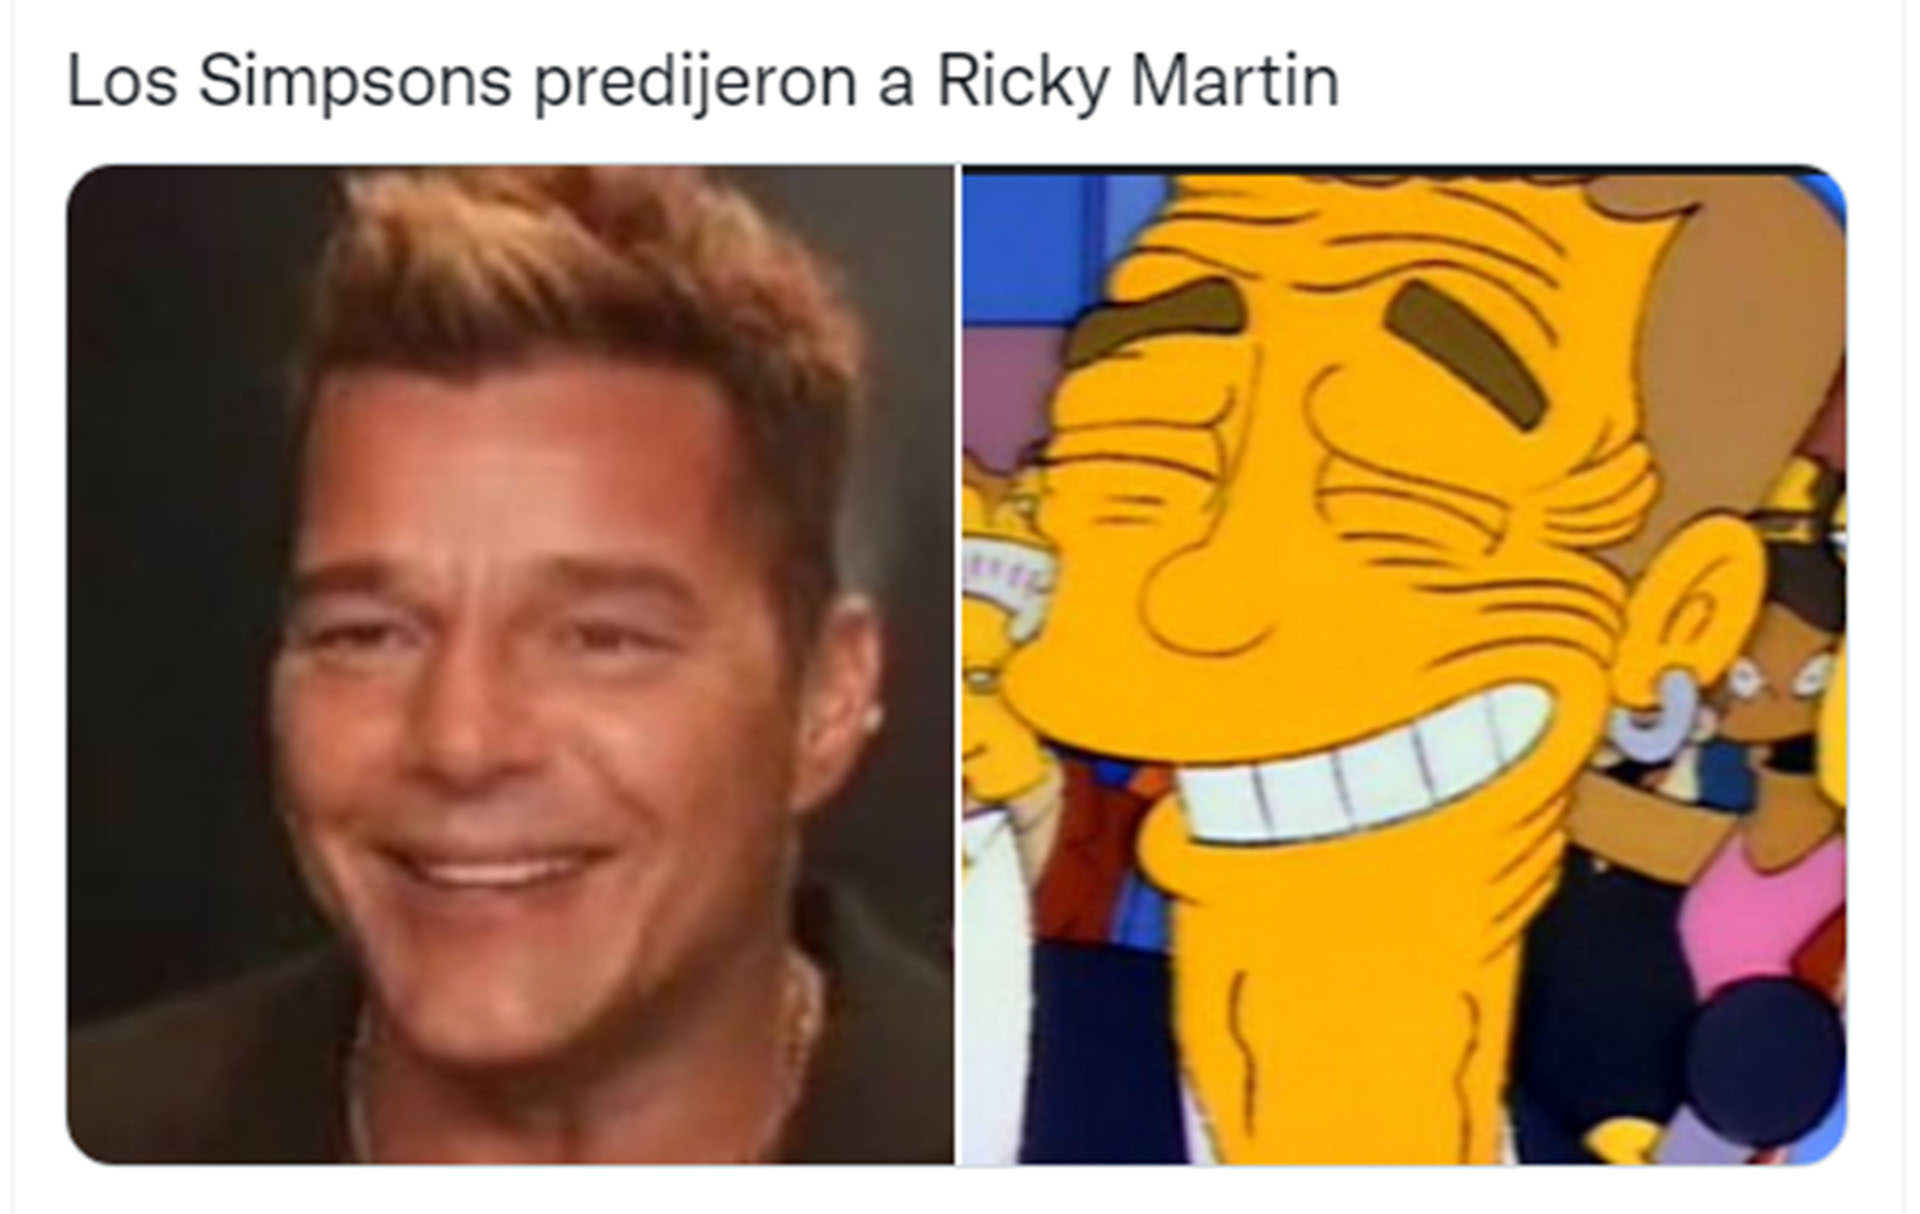 Los Simpsons, en los memes de Ricky Martin